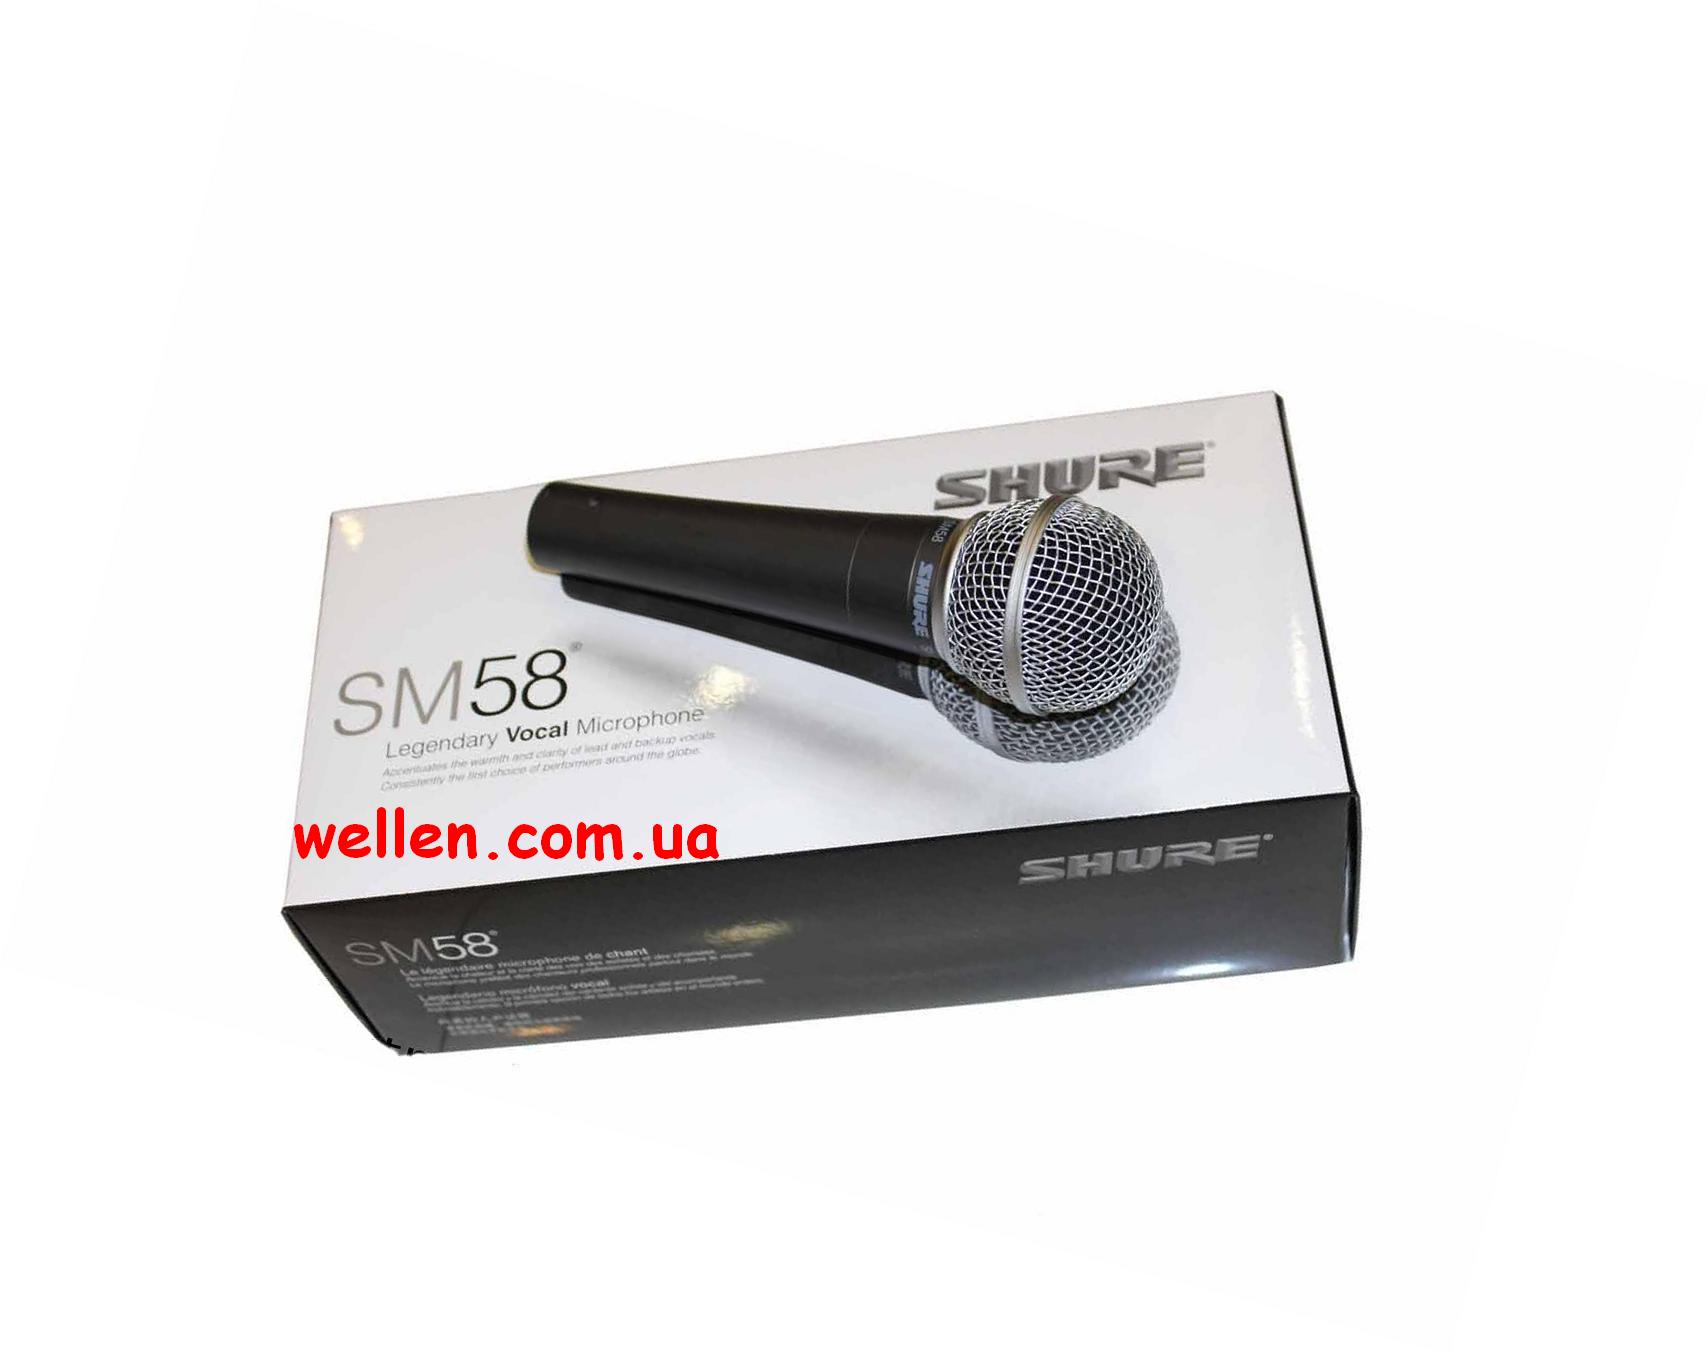 Якісний динамічний шнуровий мікрофон Shure Sm58 вартість 400 грн.